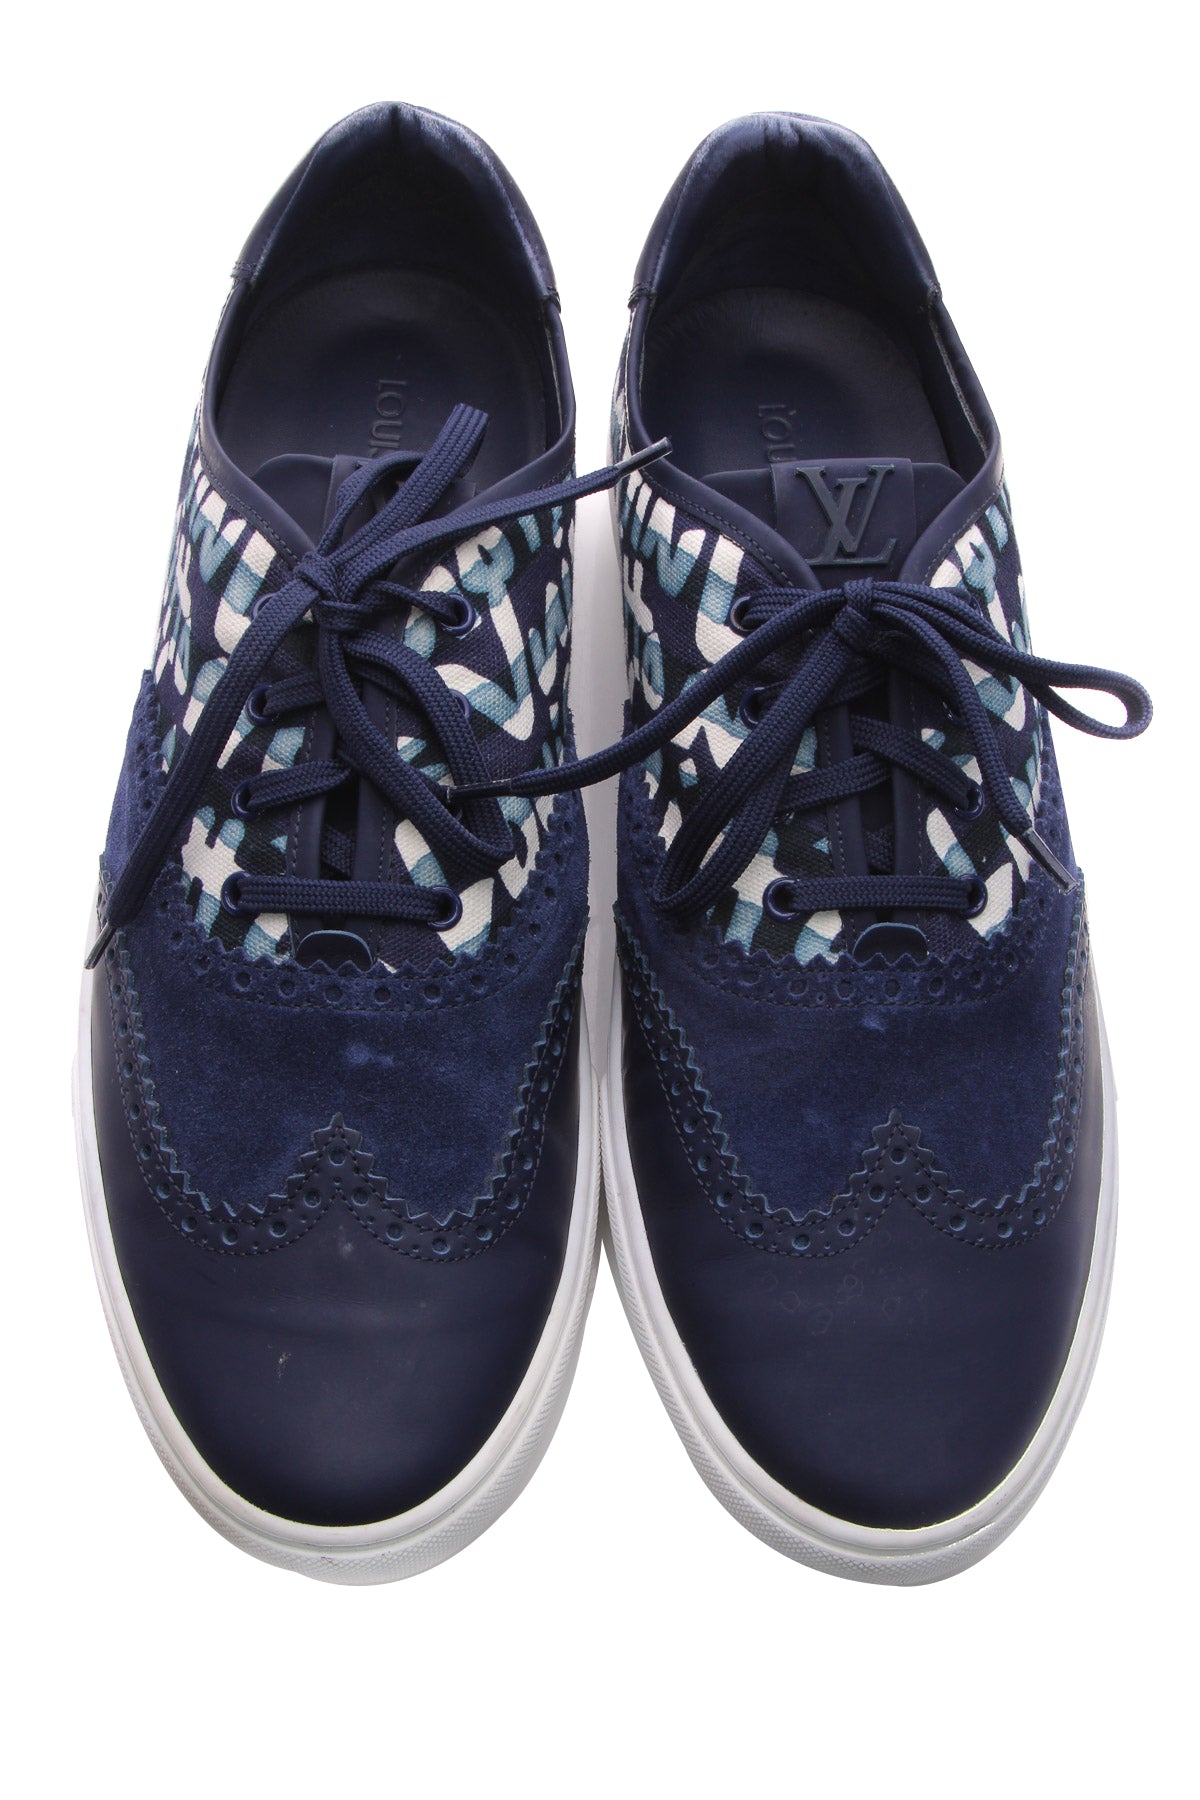 Louis Vuitton Blue Athletic Shoes for Men